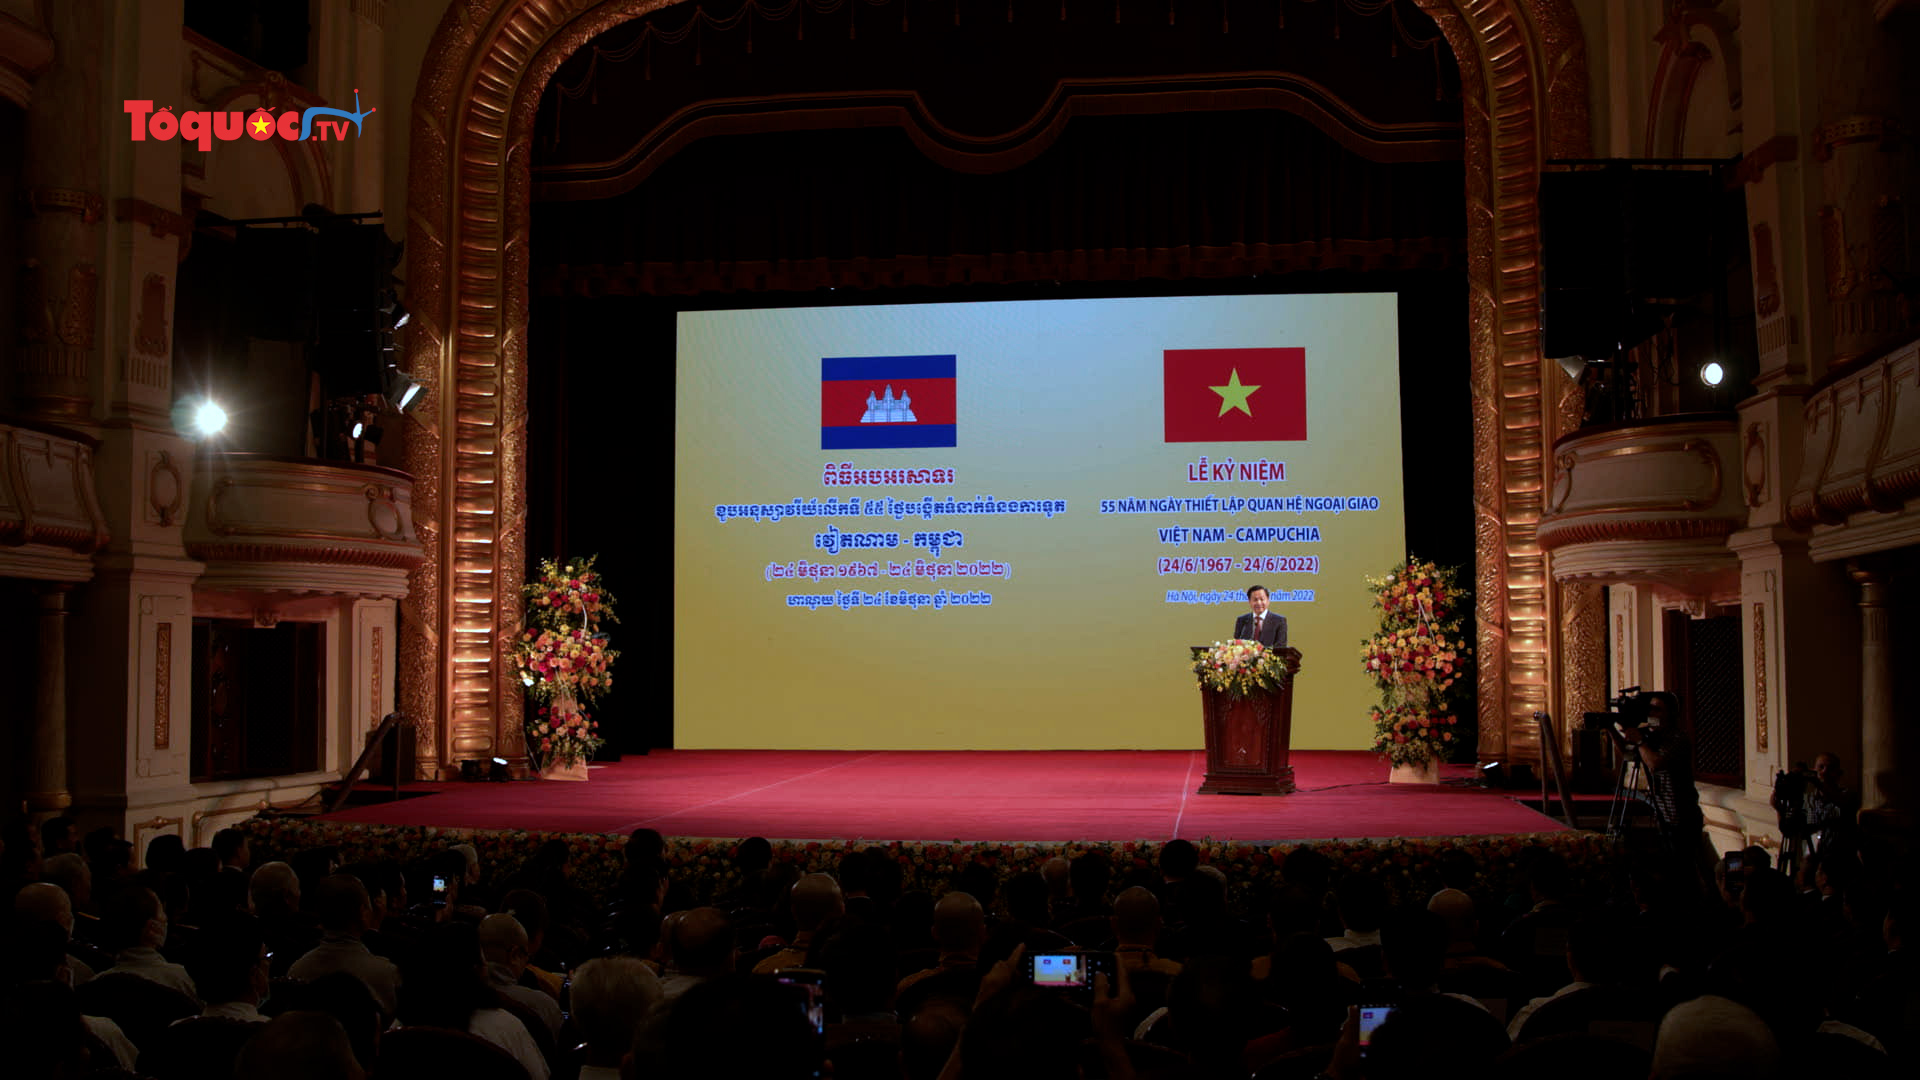 Long trọng tổ chức Lễ kỷ niệm 55 năm ngày thiết lập quan hệ ngoại giao Việt Nam - Campuchia